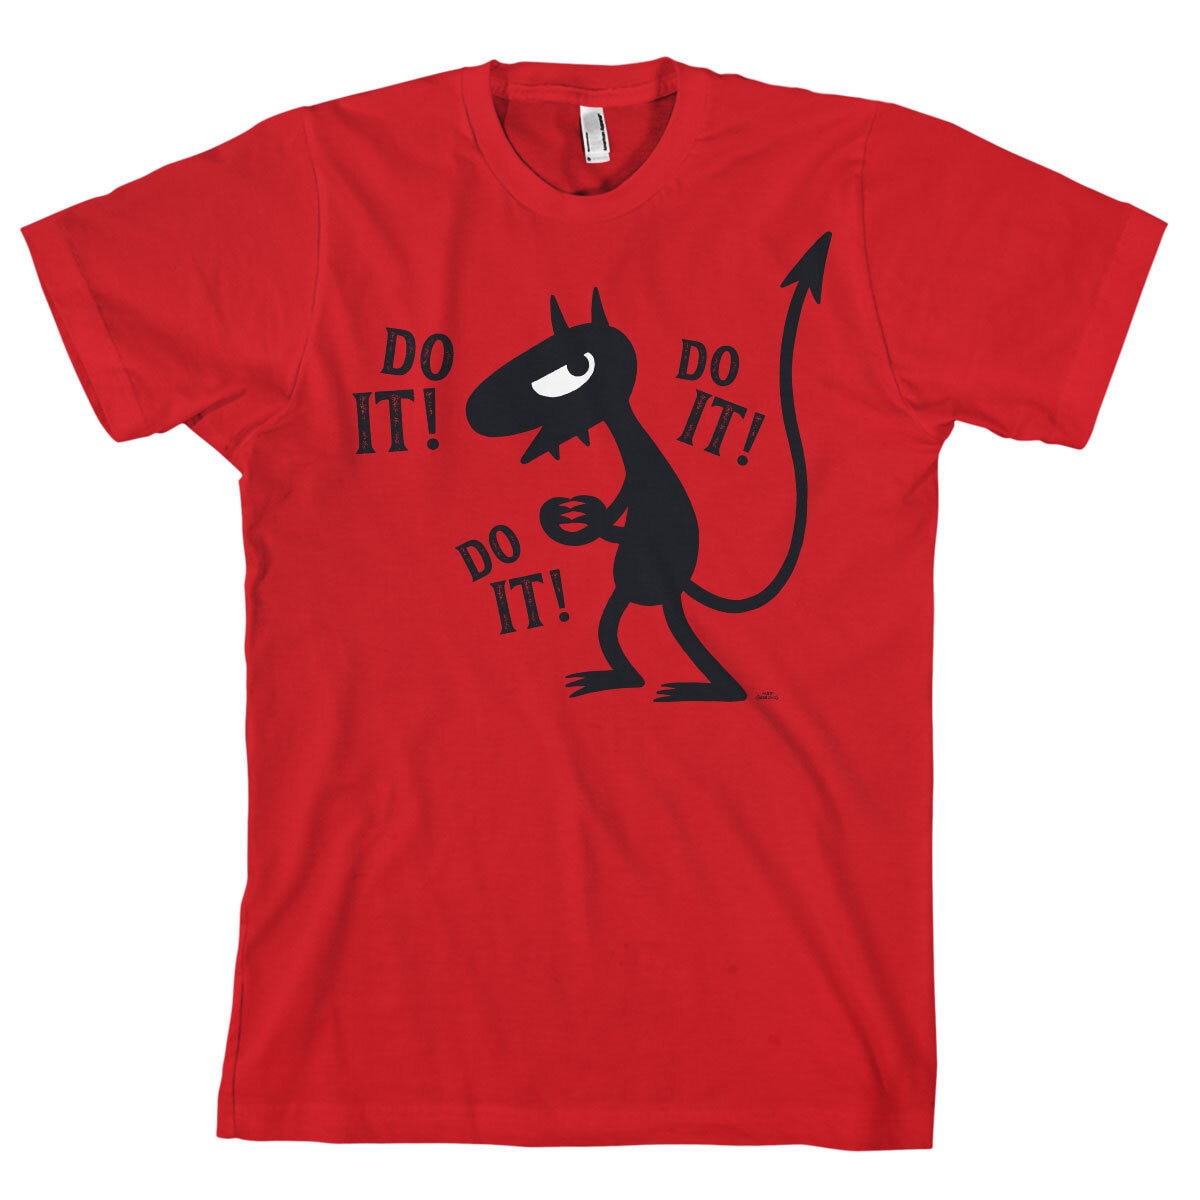 Luci - Do it! Do it! T-Shirt